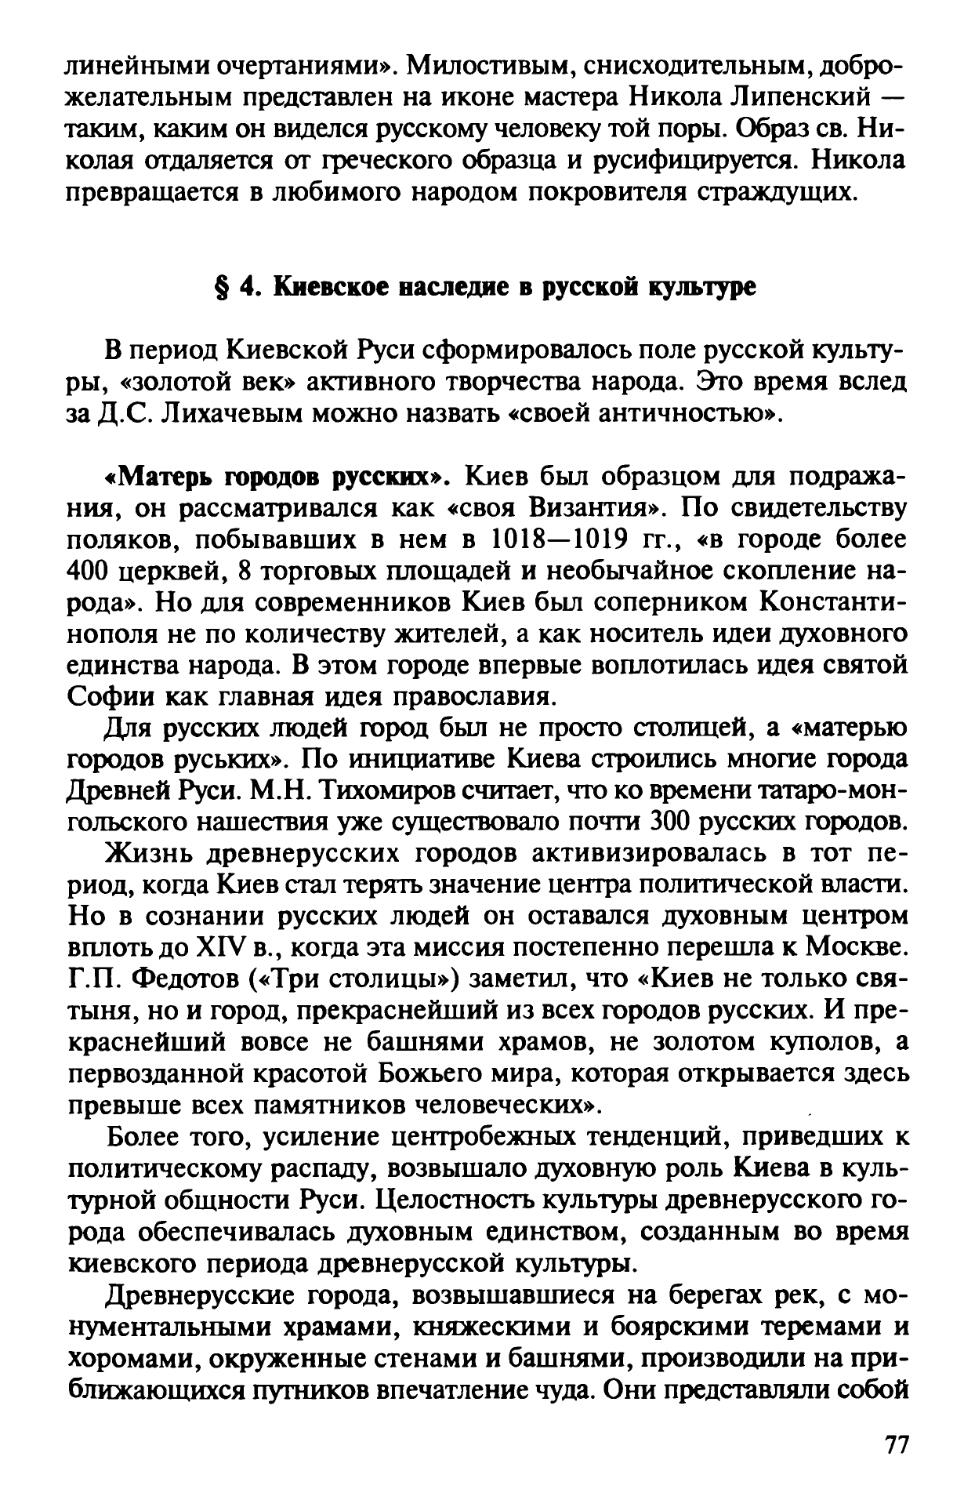 § 4. Киевское наследие в русской культуре